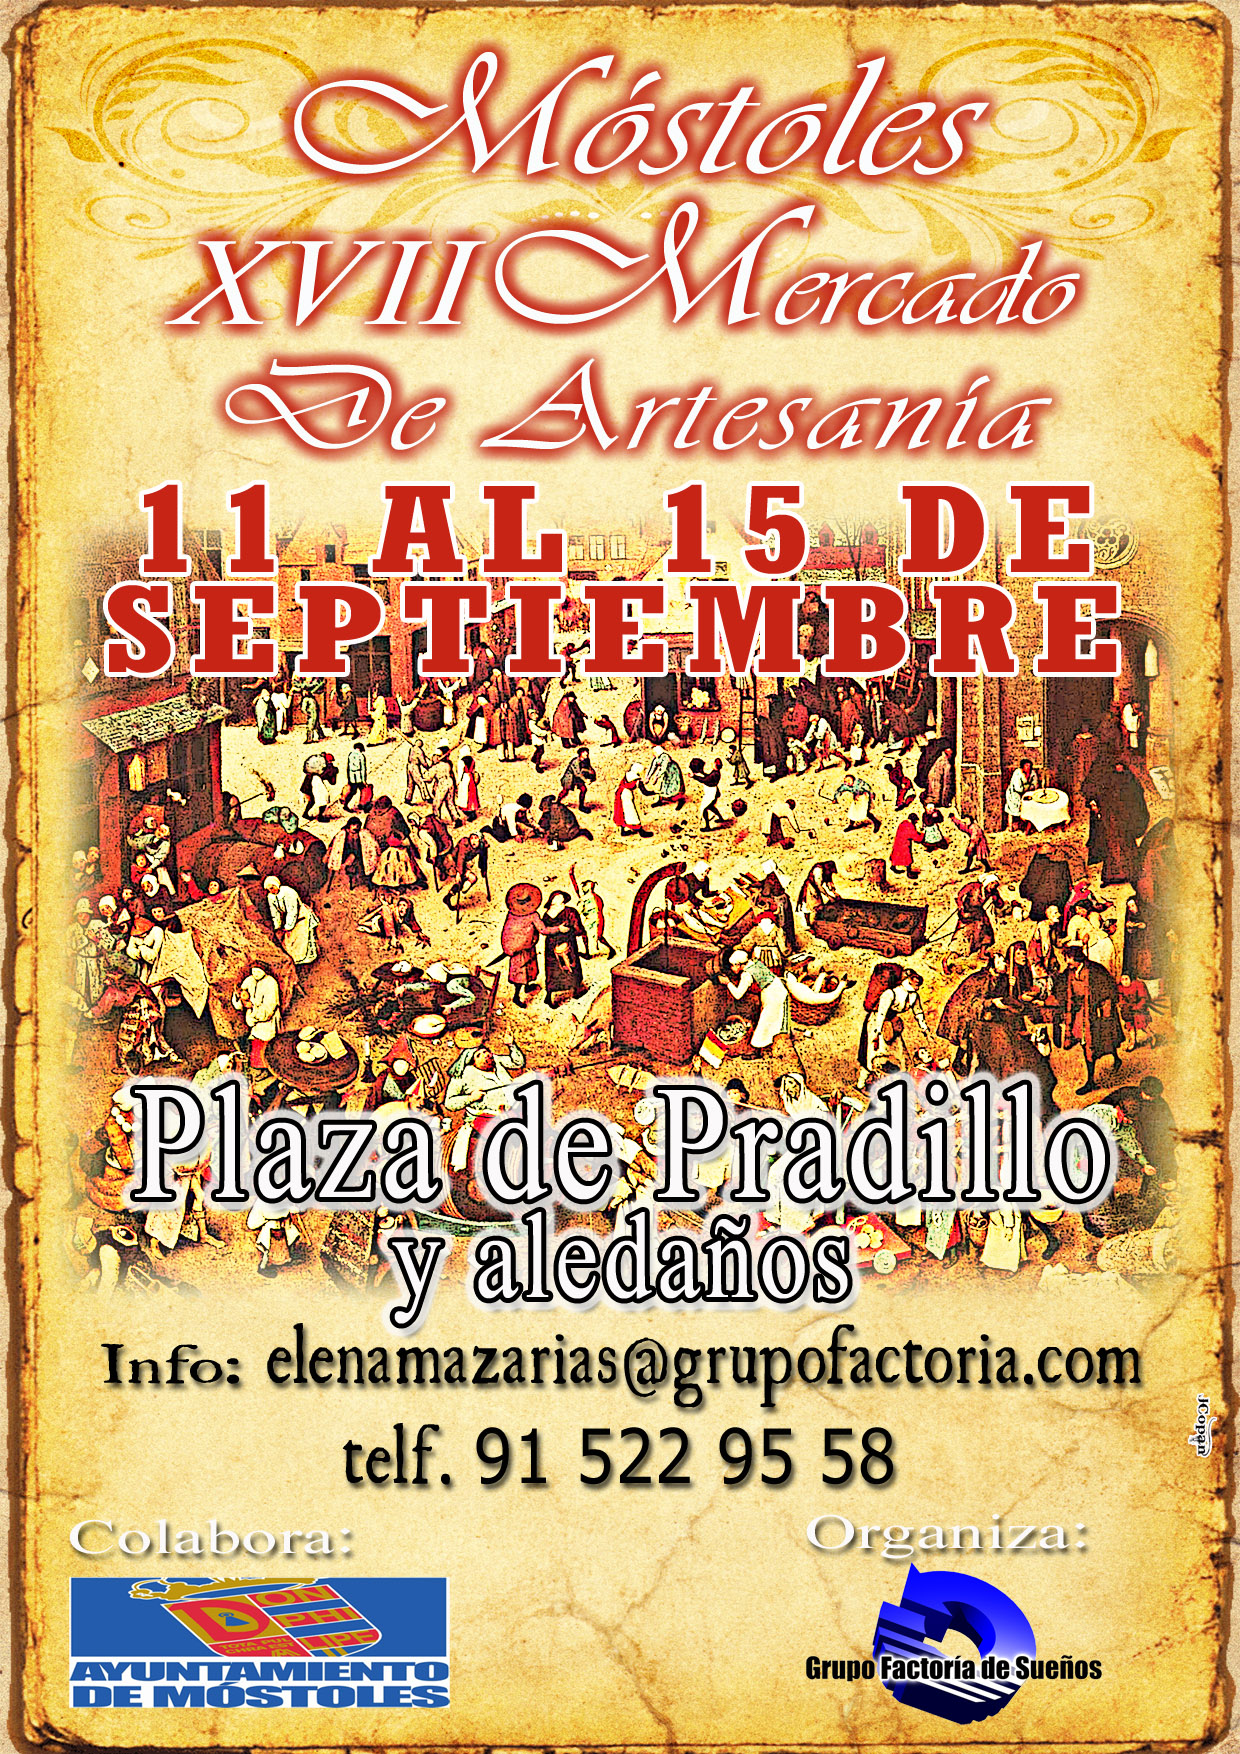 XVIII Mercado de artesania en Mostoles, Madrid del 11 al 15 de Septiembre del 2015